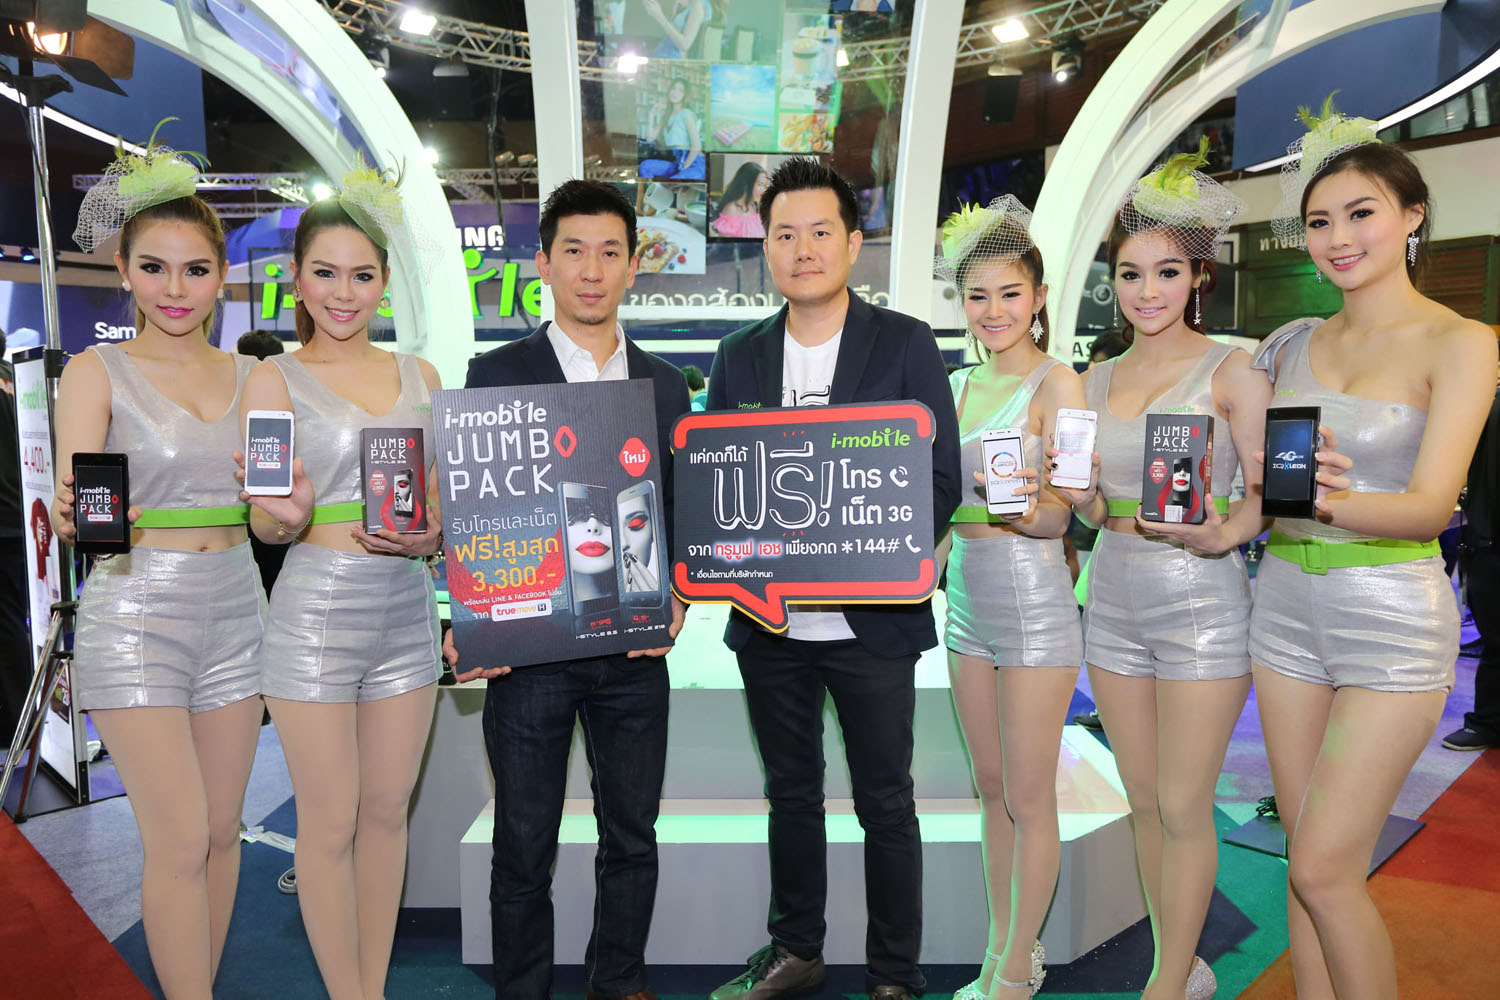 [PR] ?ไอ-โมบาย? จัดโปรเฟี้ยวๆ กระหน่ำราคาพิเศษทั้งฟรีทั้งแถม ในงาน Thailand Mobile Expo 2015